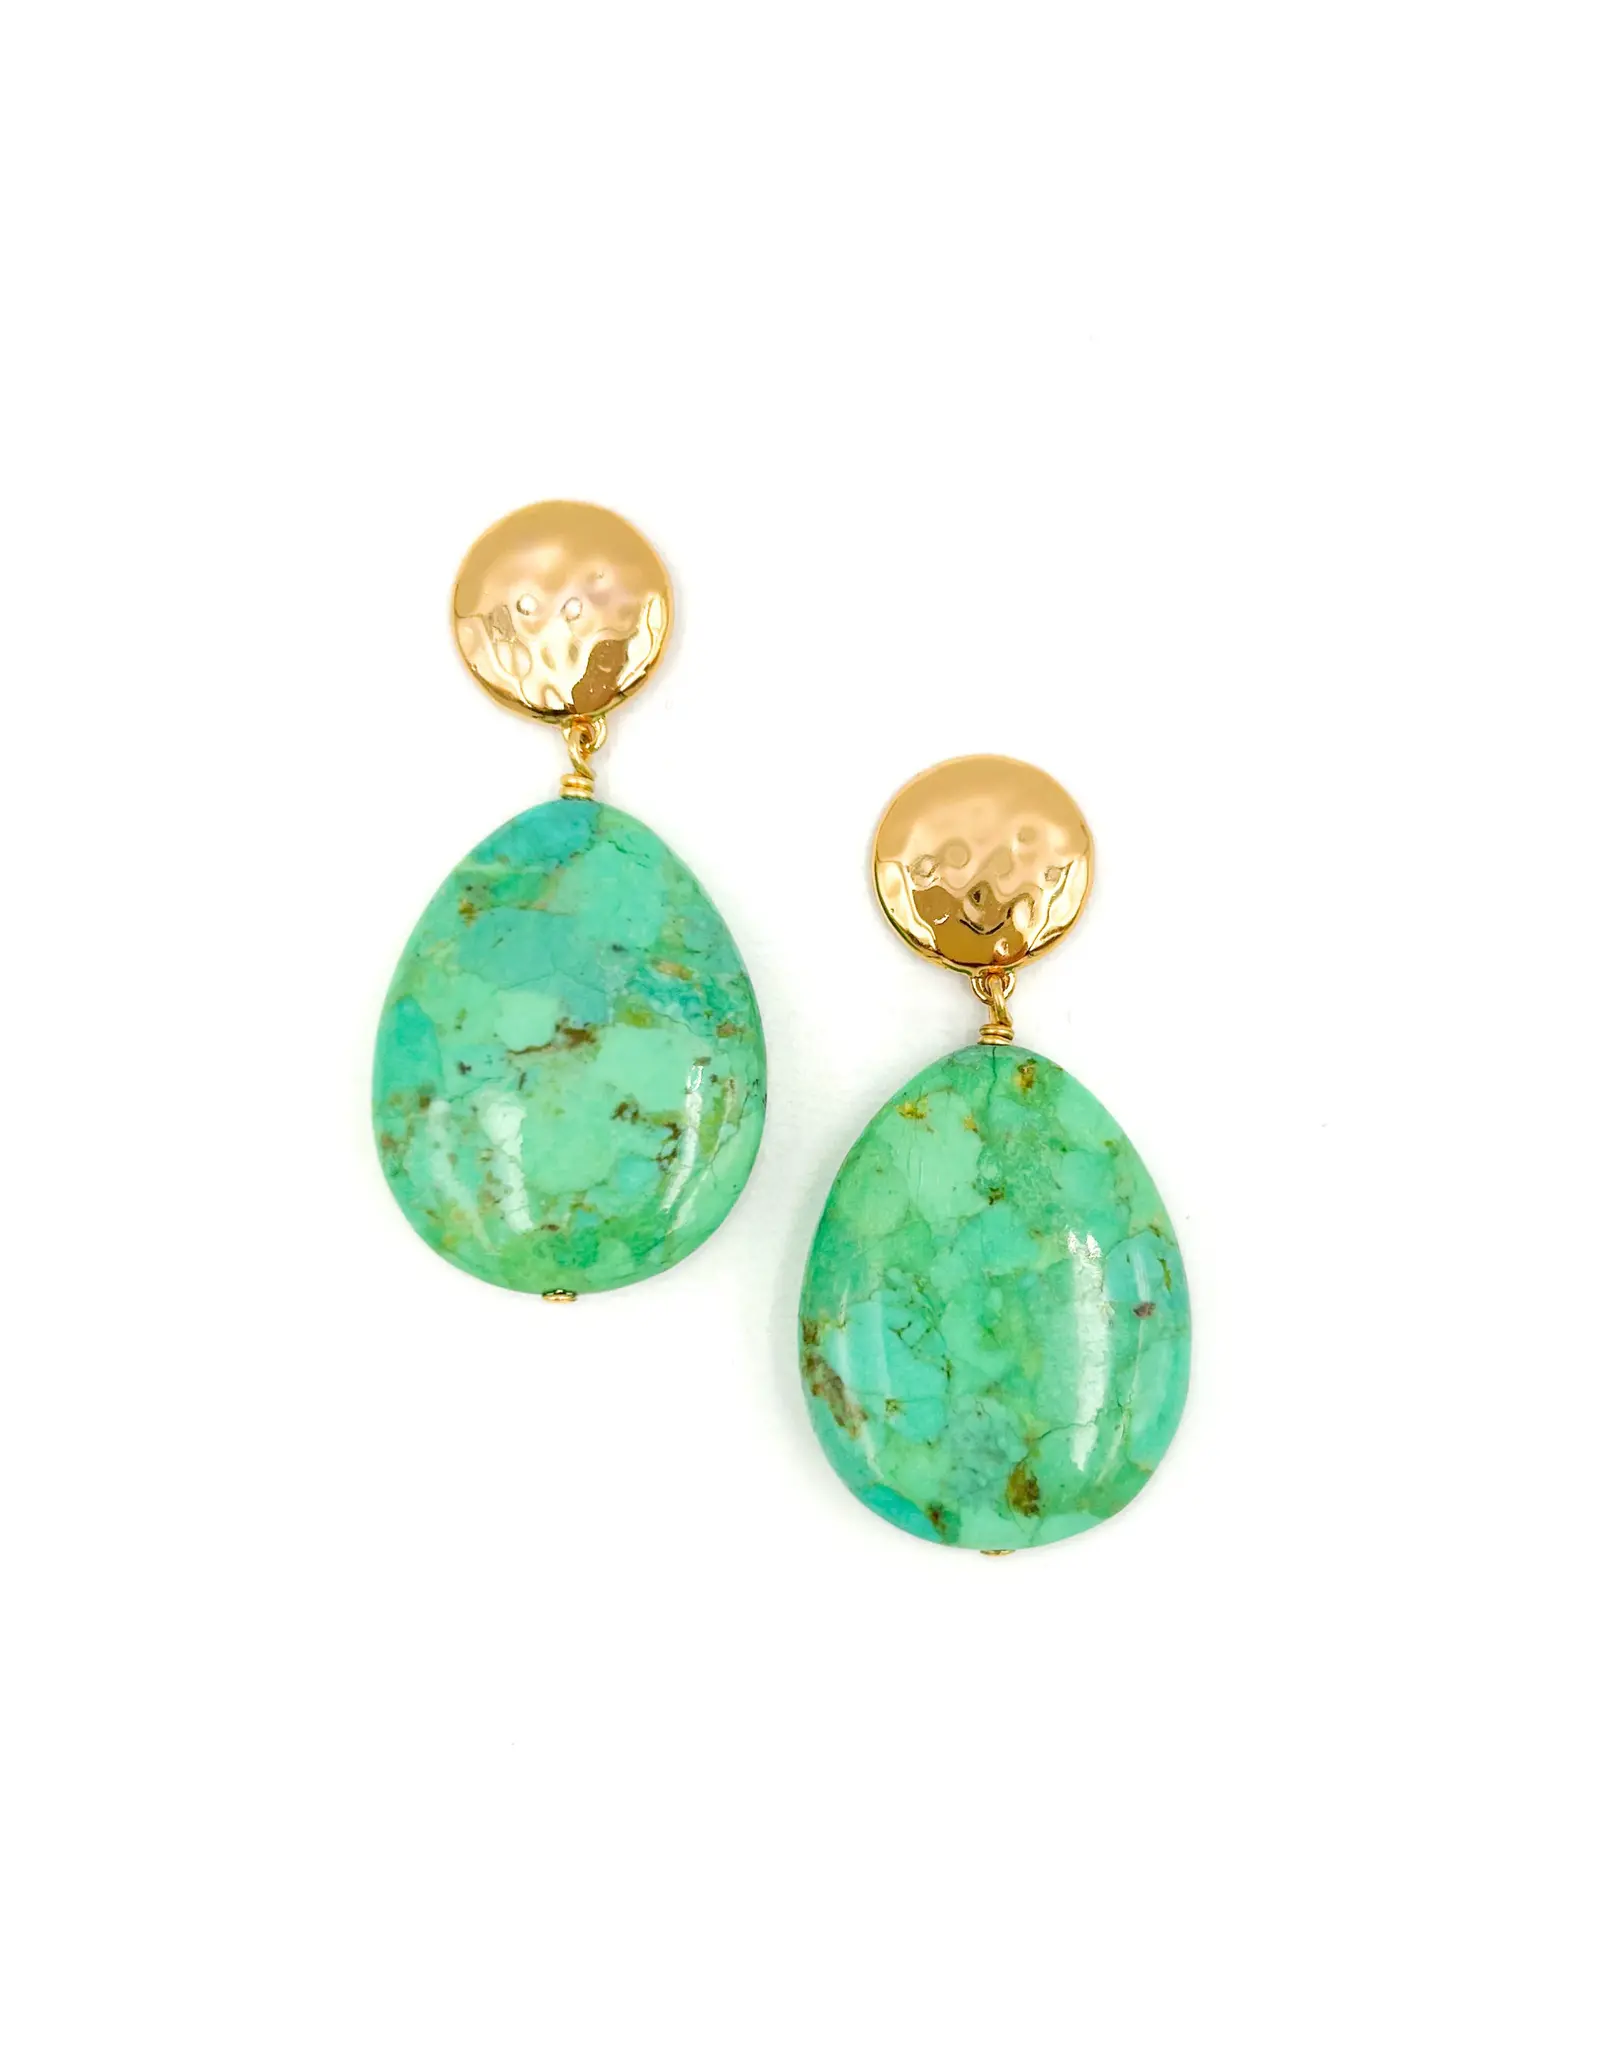 NEST Jewelry NEST Green Turquoise Teardrop Earrings